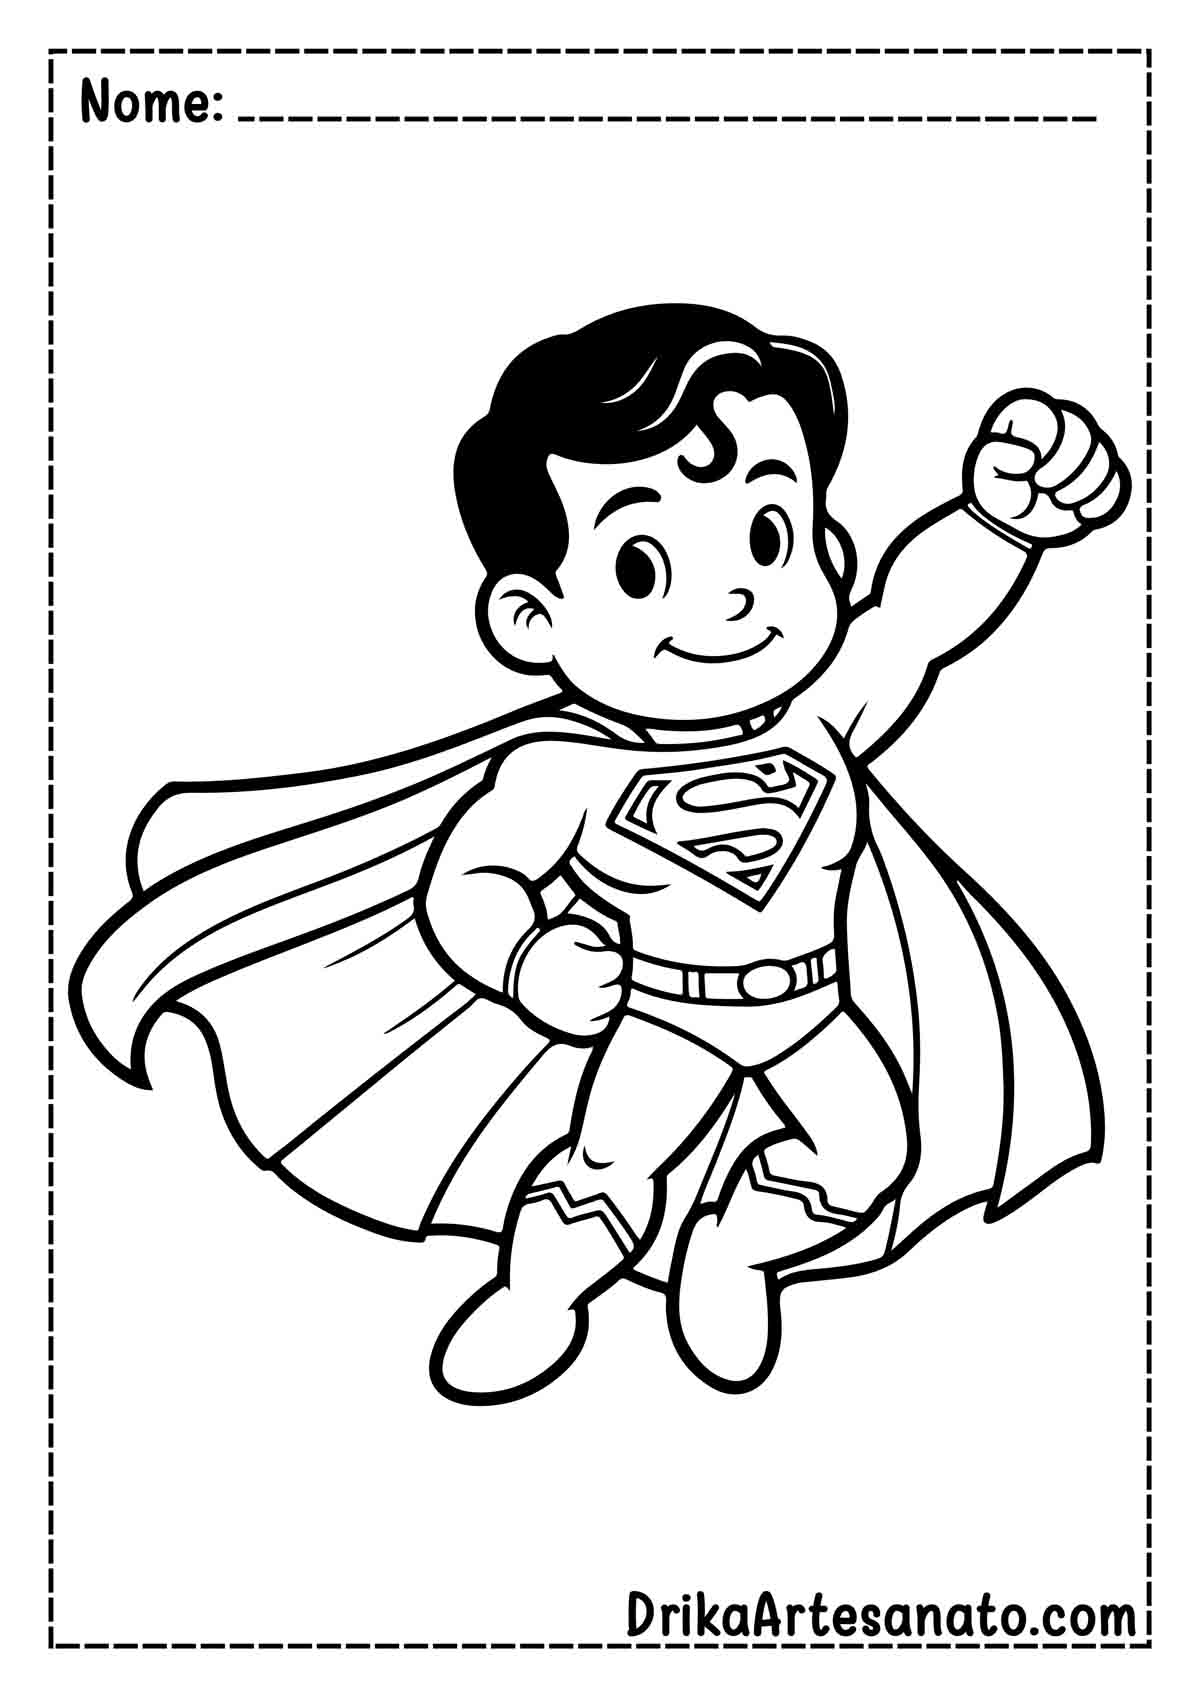 Desenho do Superman Infantil para Imprimir